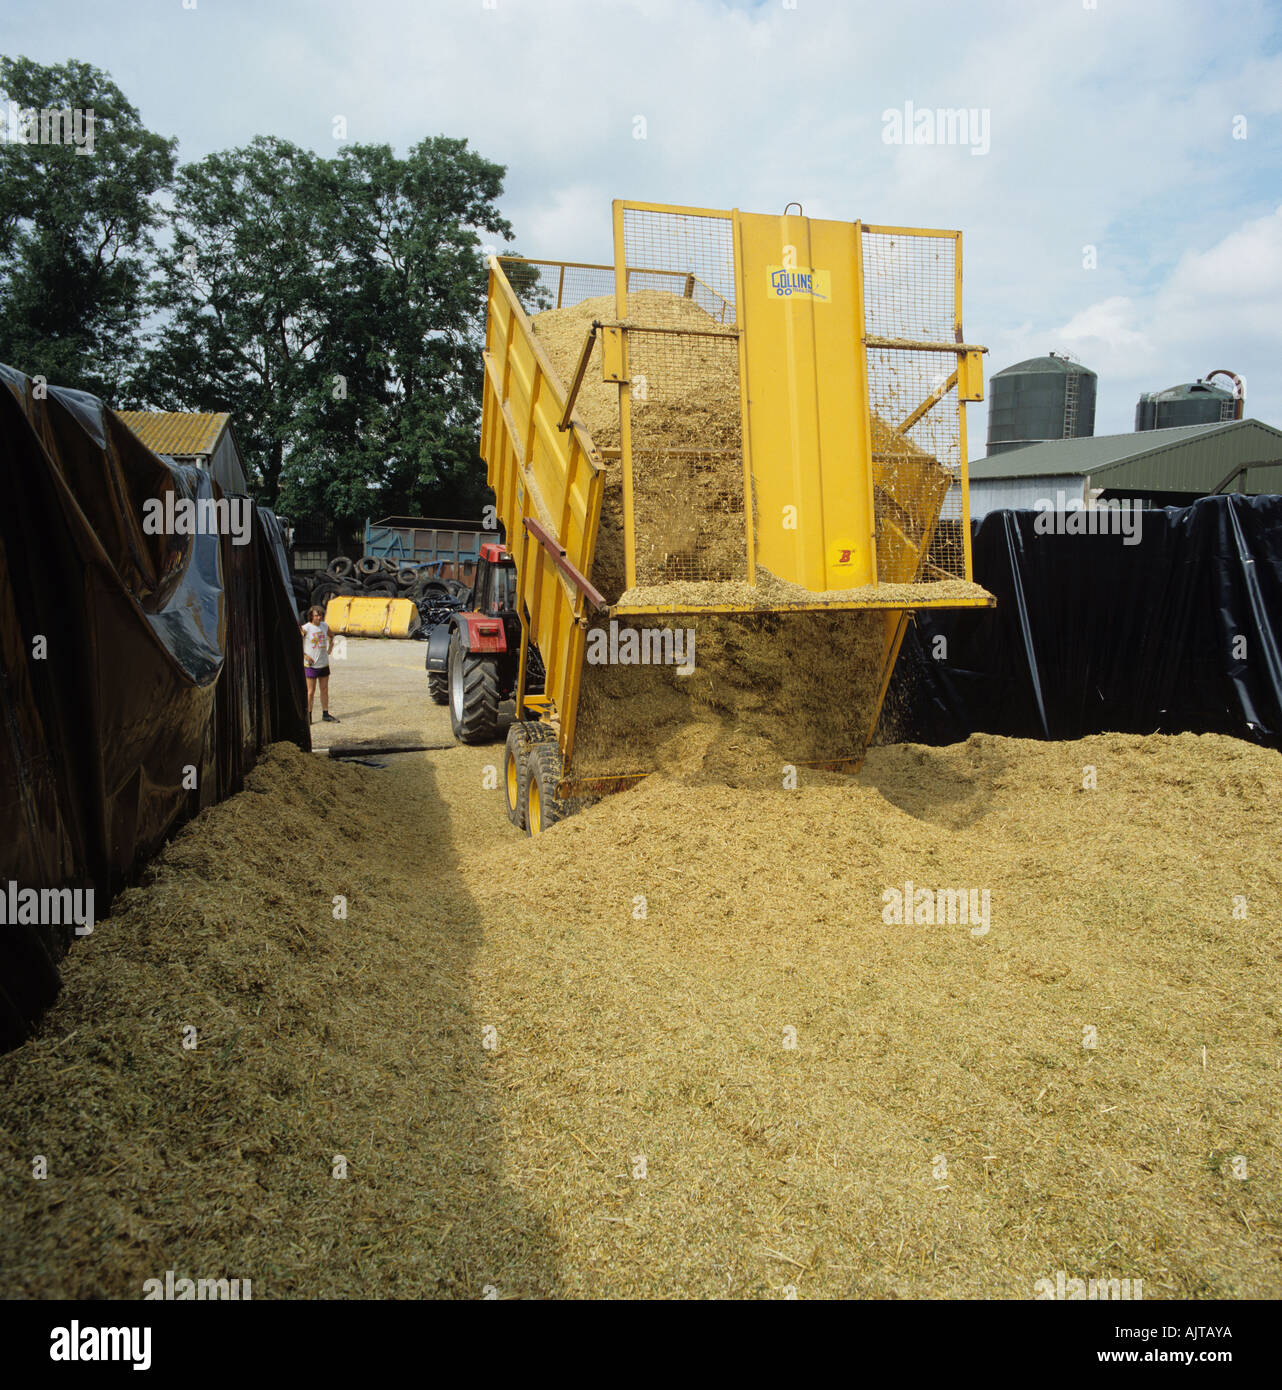 Traktoranhänger, Ganzpflanzen Weizen Silage in die Klemme für die Lagerung Stockfoto